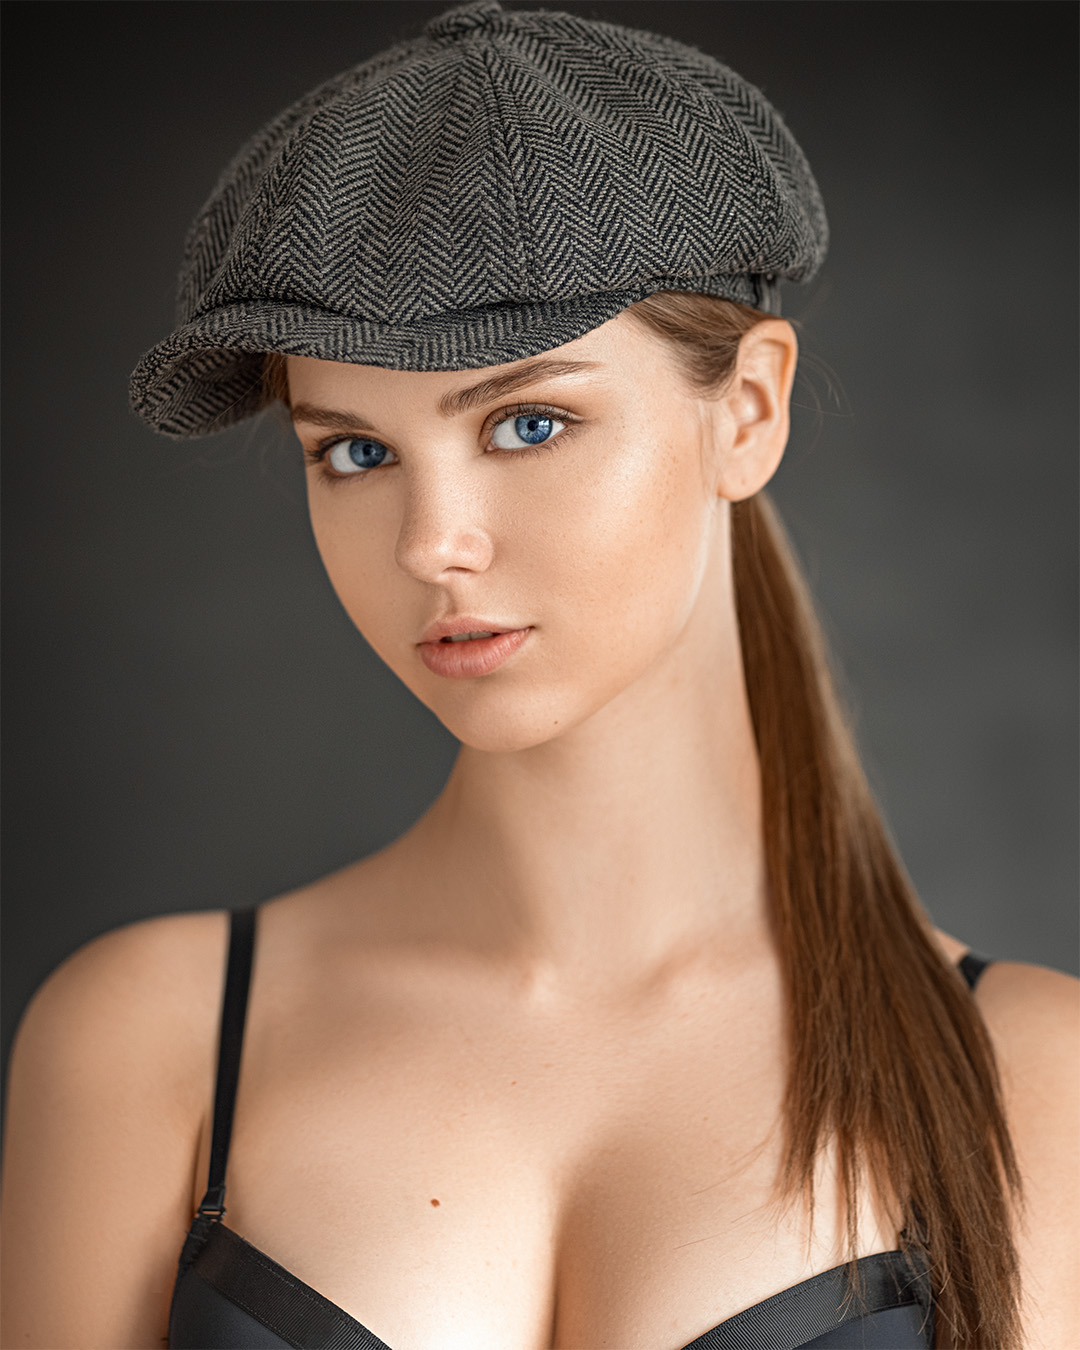 Evgeny Sibiraev Women Model Ponytail 1080x1350